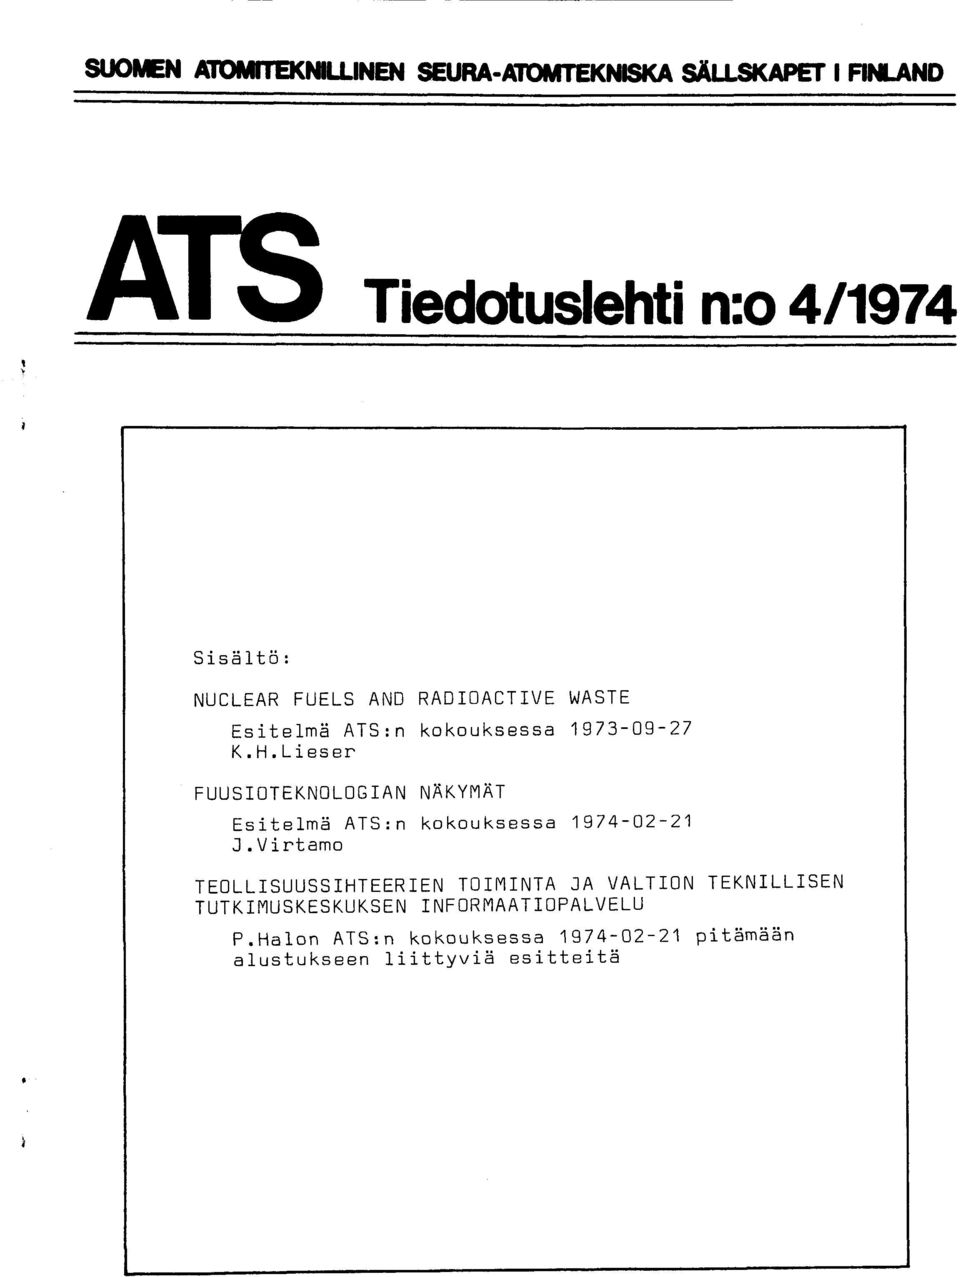 1973-09-27 K.H.Lieser FUUSOTEKNOLOGAN NAKYTAT EsitelmH ATS: n kokouksessa 1974-A2-21 J.